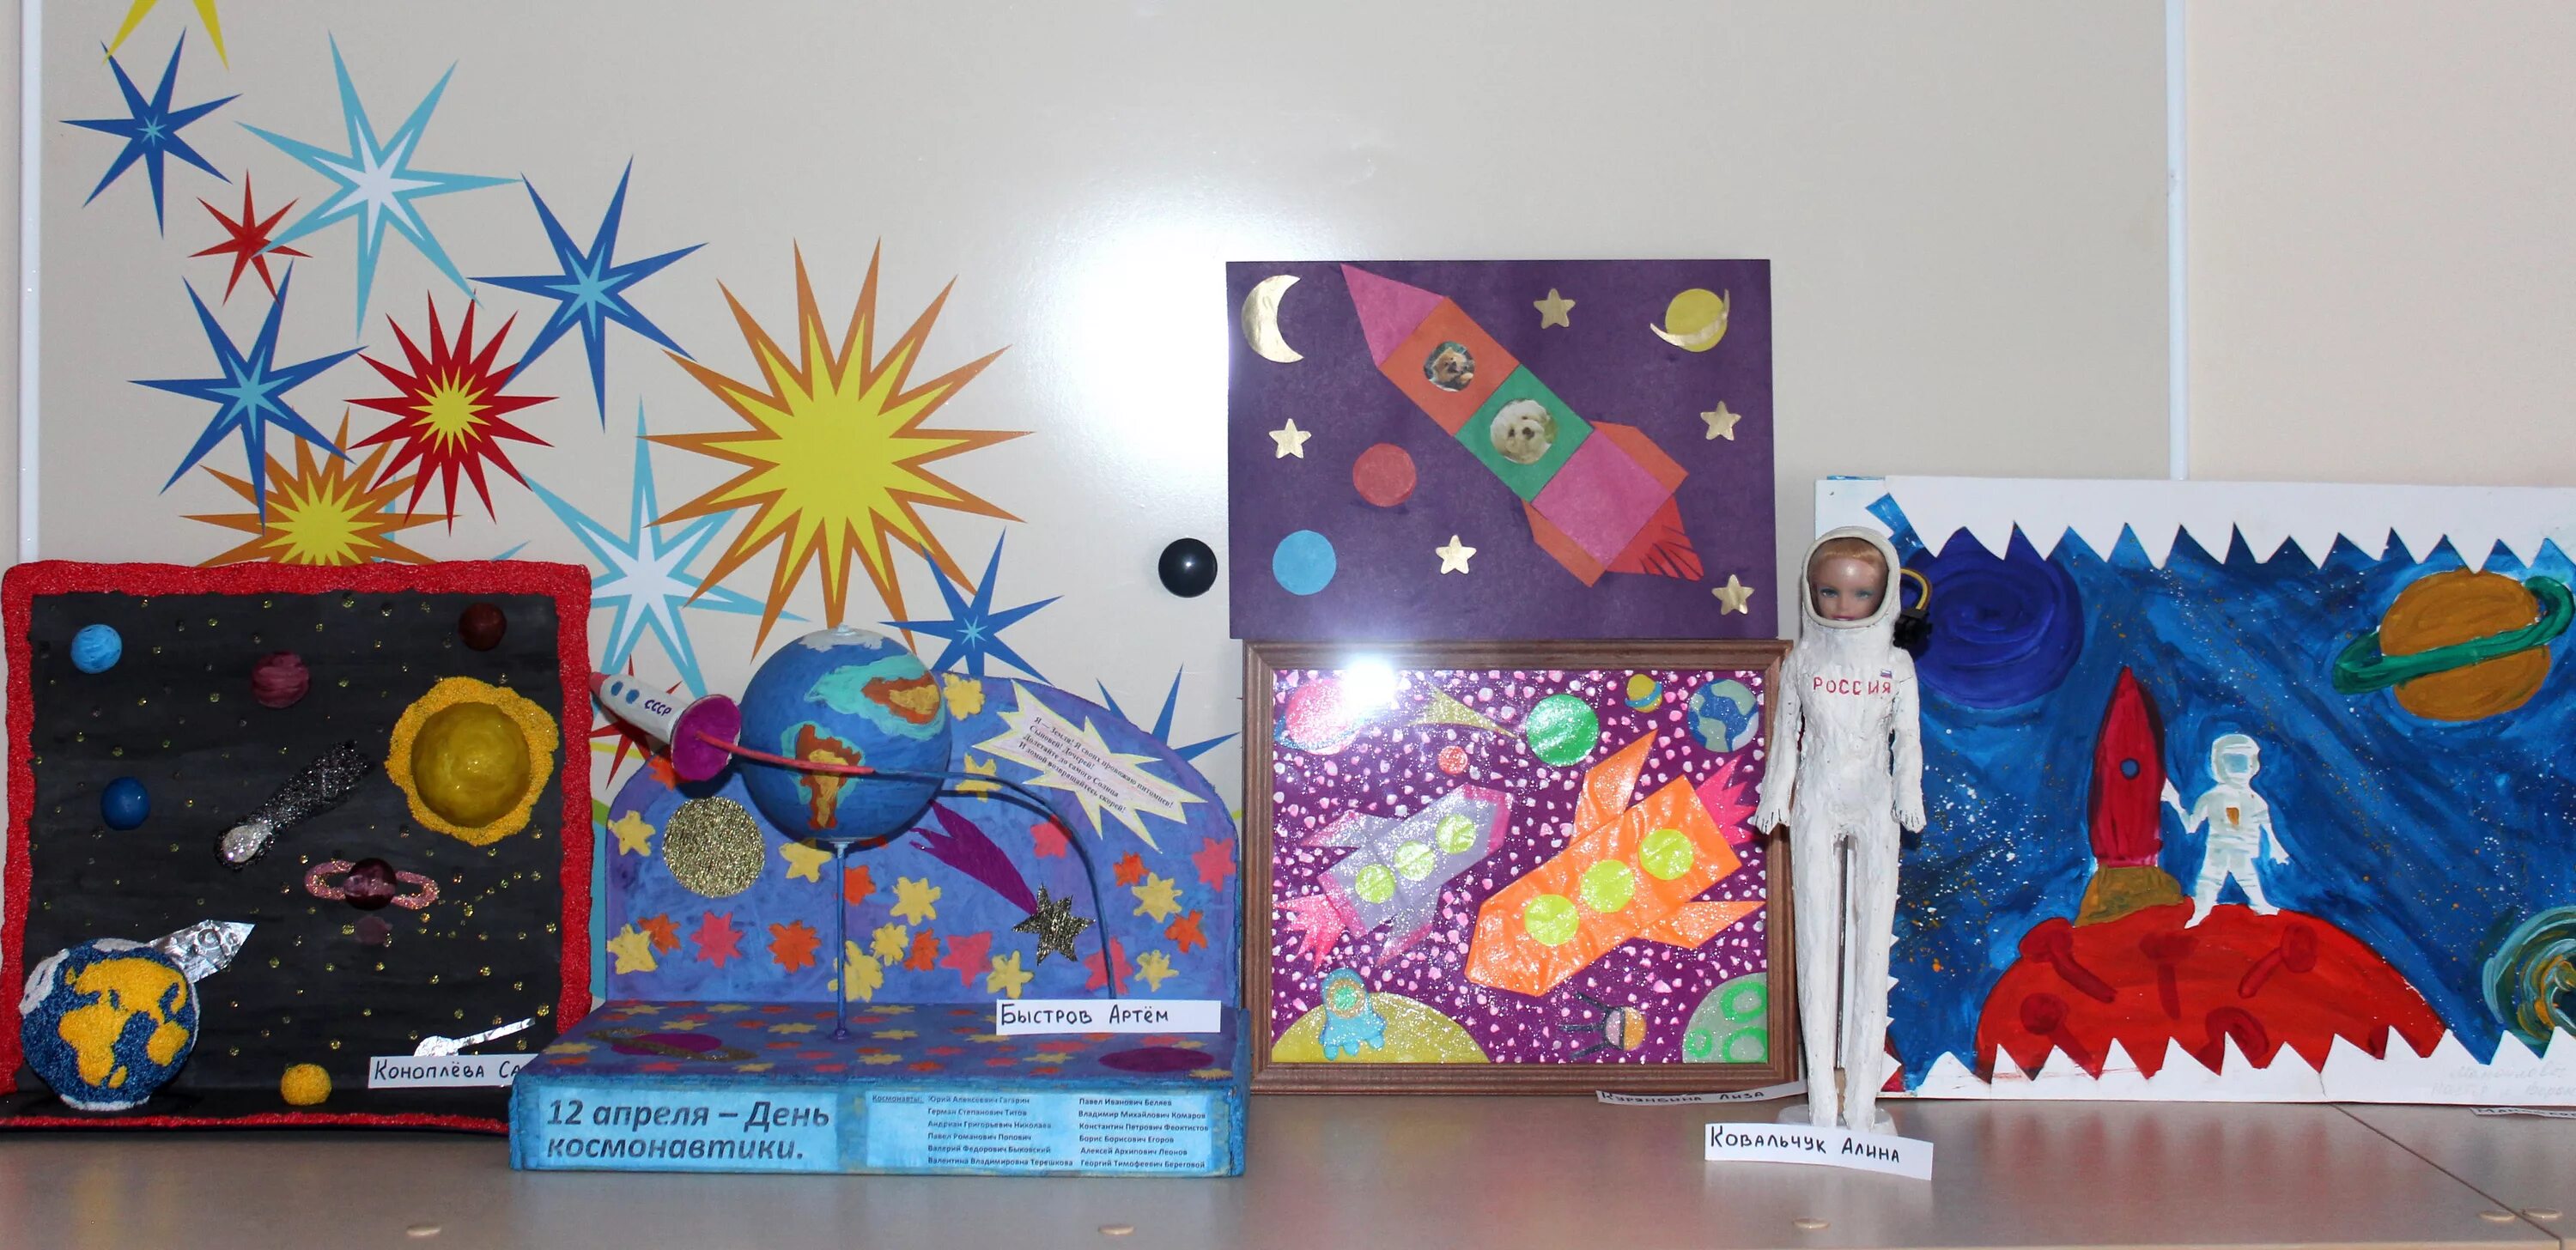 Выставка поделок ко дню космонавтики. Поделка ко Дню космонавтики. Выставка ко Дню космонавтики в детском саду. Поделка ко Дню космонавтики в детский сад.